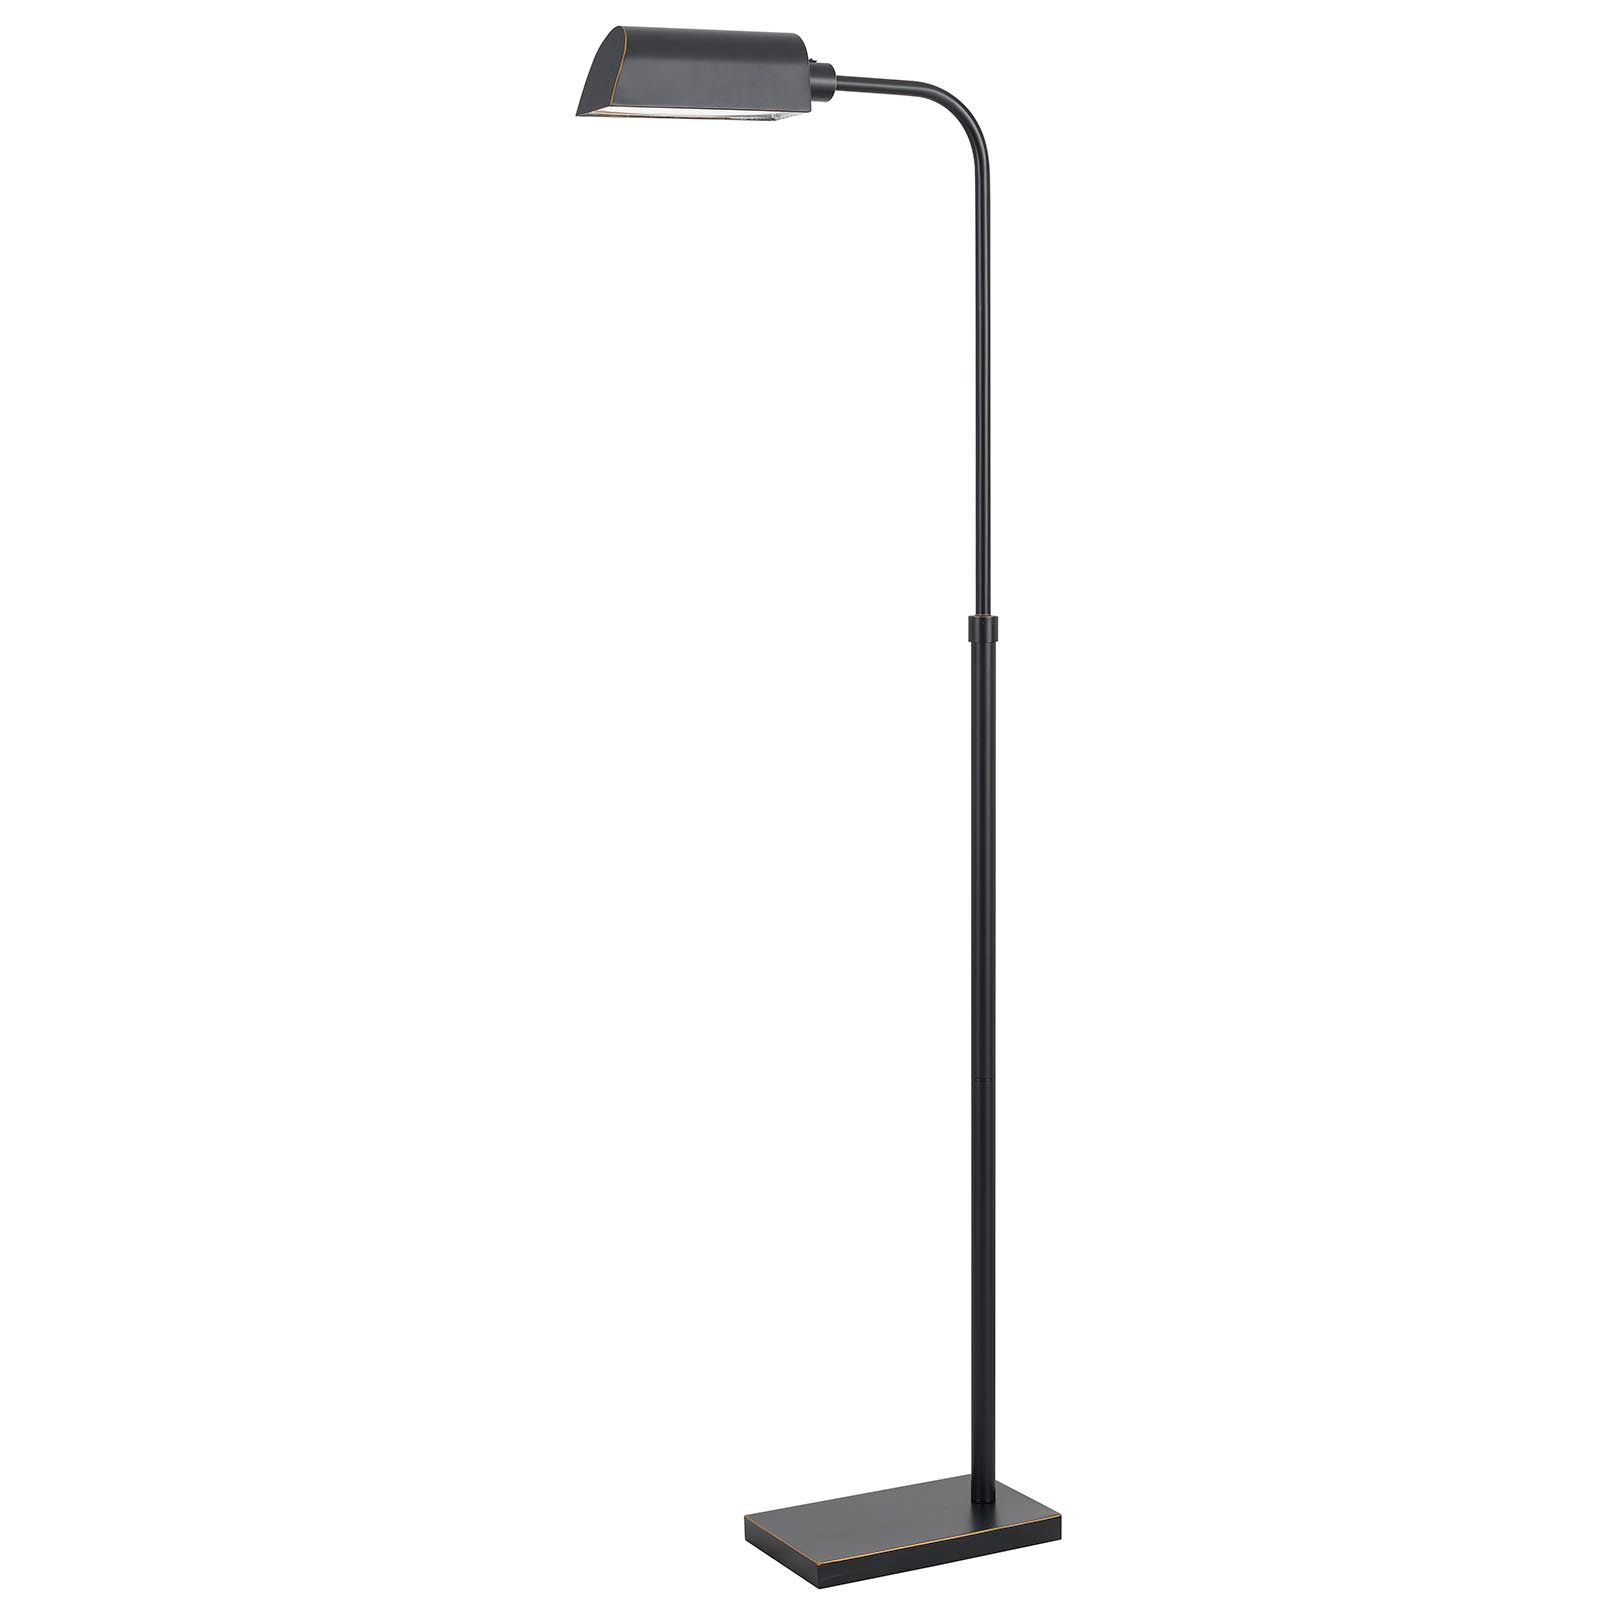 Cal Lighting :: Products :: Lamps :: Floor Lamps :: Bo 2618fl Regarding Dark Bronze Floor Lamps (View 14 of 15)